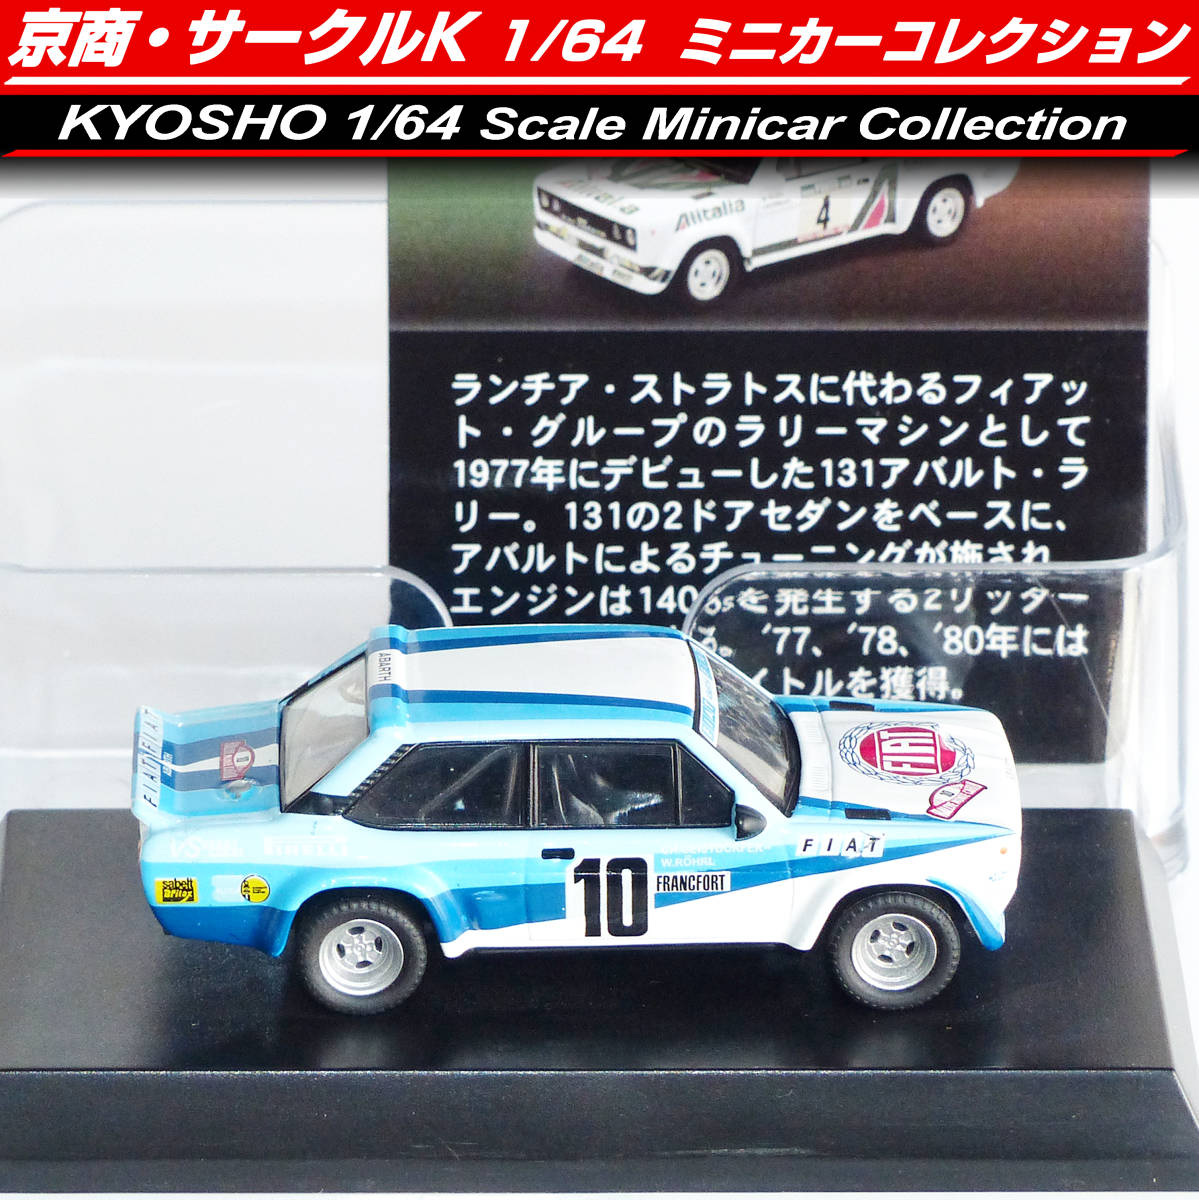 ◆京商 1/64 フィアット・ランチア 131 アバルト ラリー 青白 ◆ ミニカー コレクション 限定品 ◆ FIAT・LANCIA 131 Abarth Rally KYOSHOの画像2